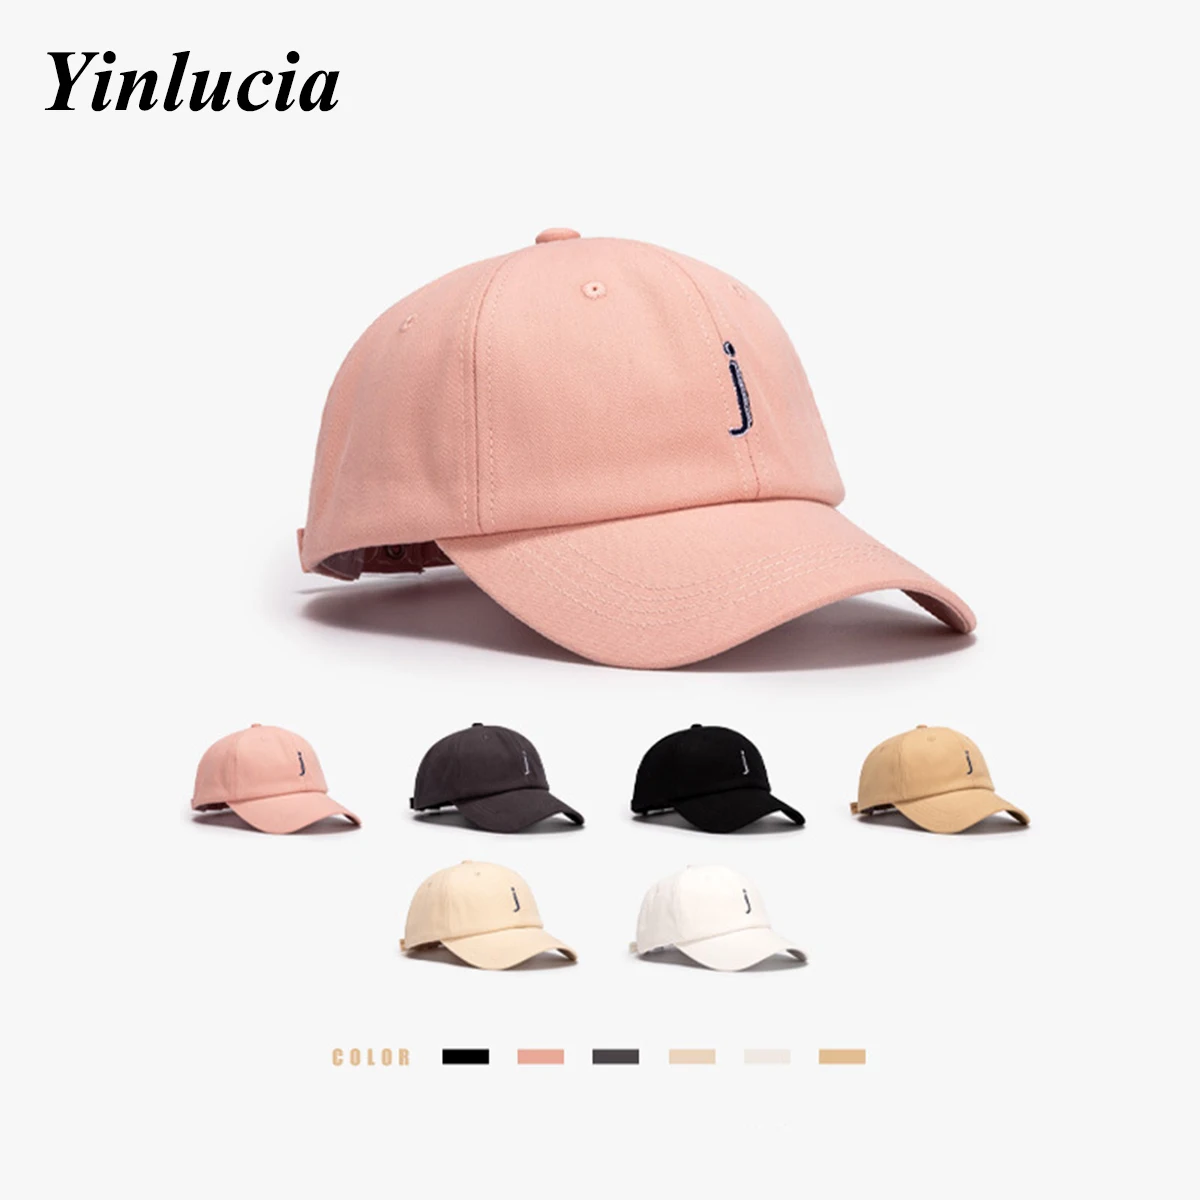 

J Embroidery Kpop Bone Baseball Cap Caps For Men Women Hip Hop Cap Trucker Hat Skateboard Hats Simplicity Sunhats